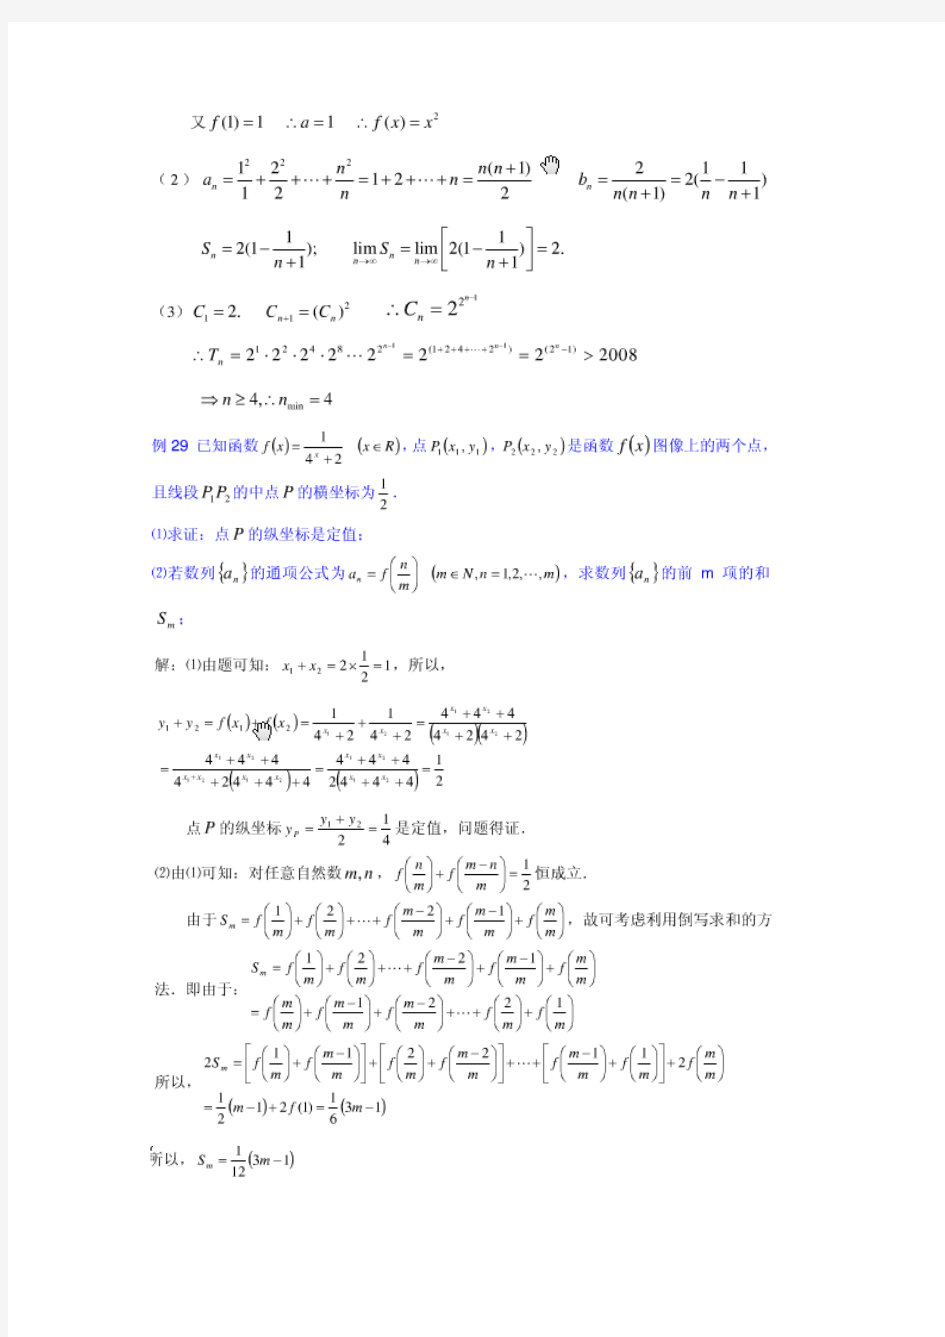 2013年-高考数学-数列与函数交汇的综合题难题-尖子生必备